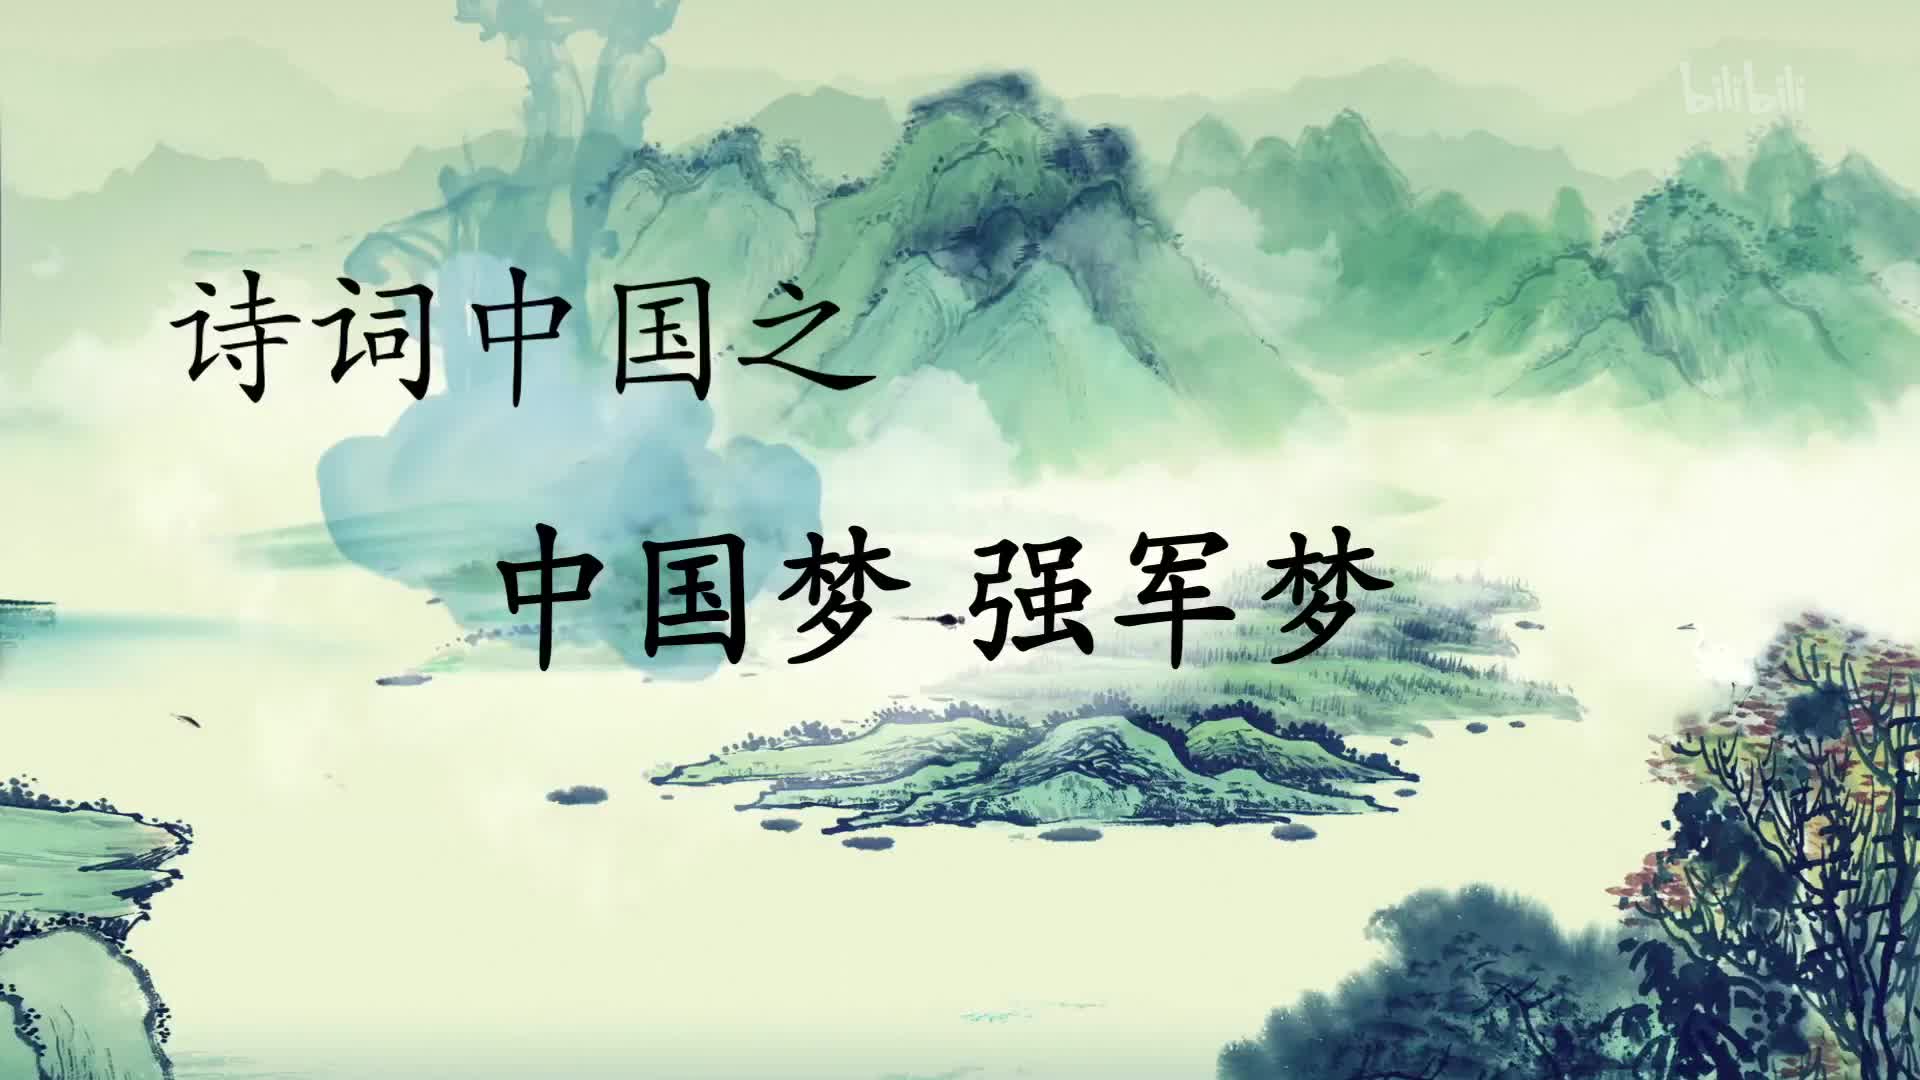 【纪录片】《诗词中国》-中国梦、强军梦